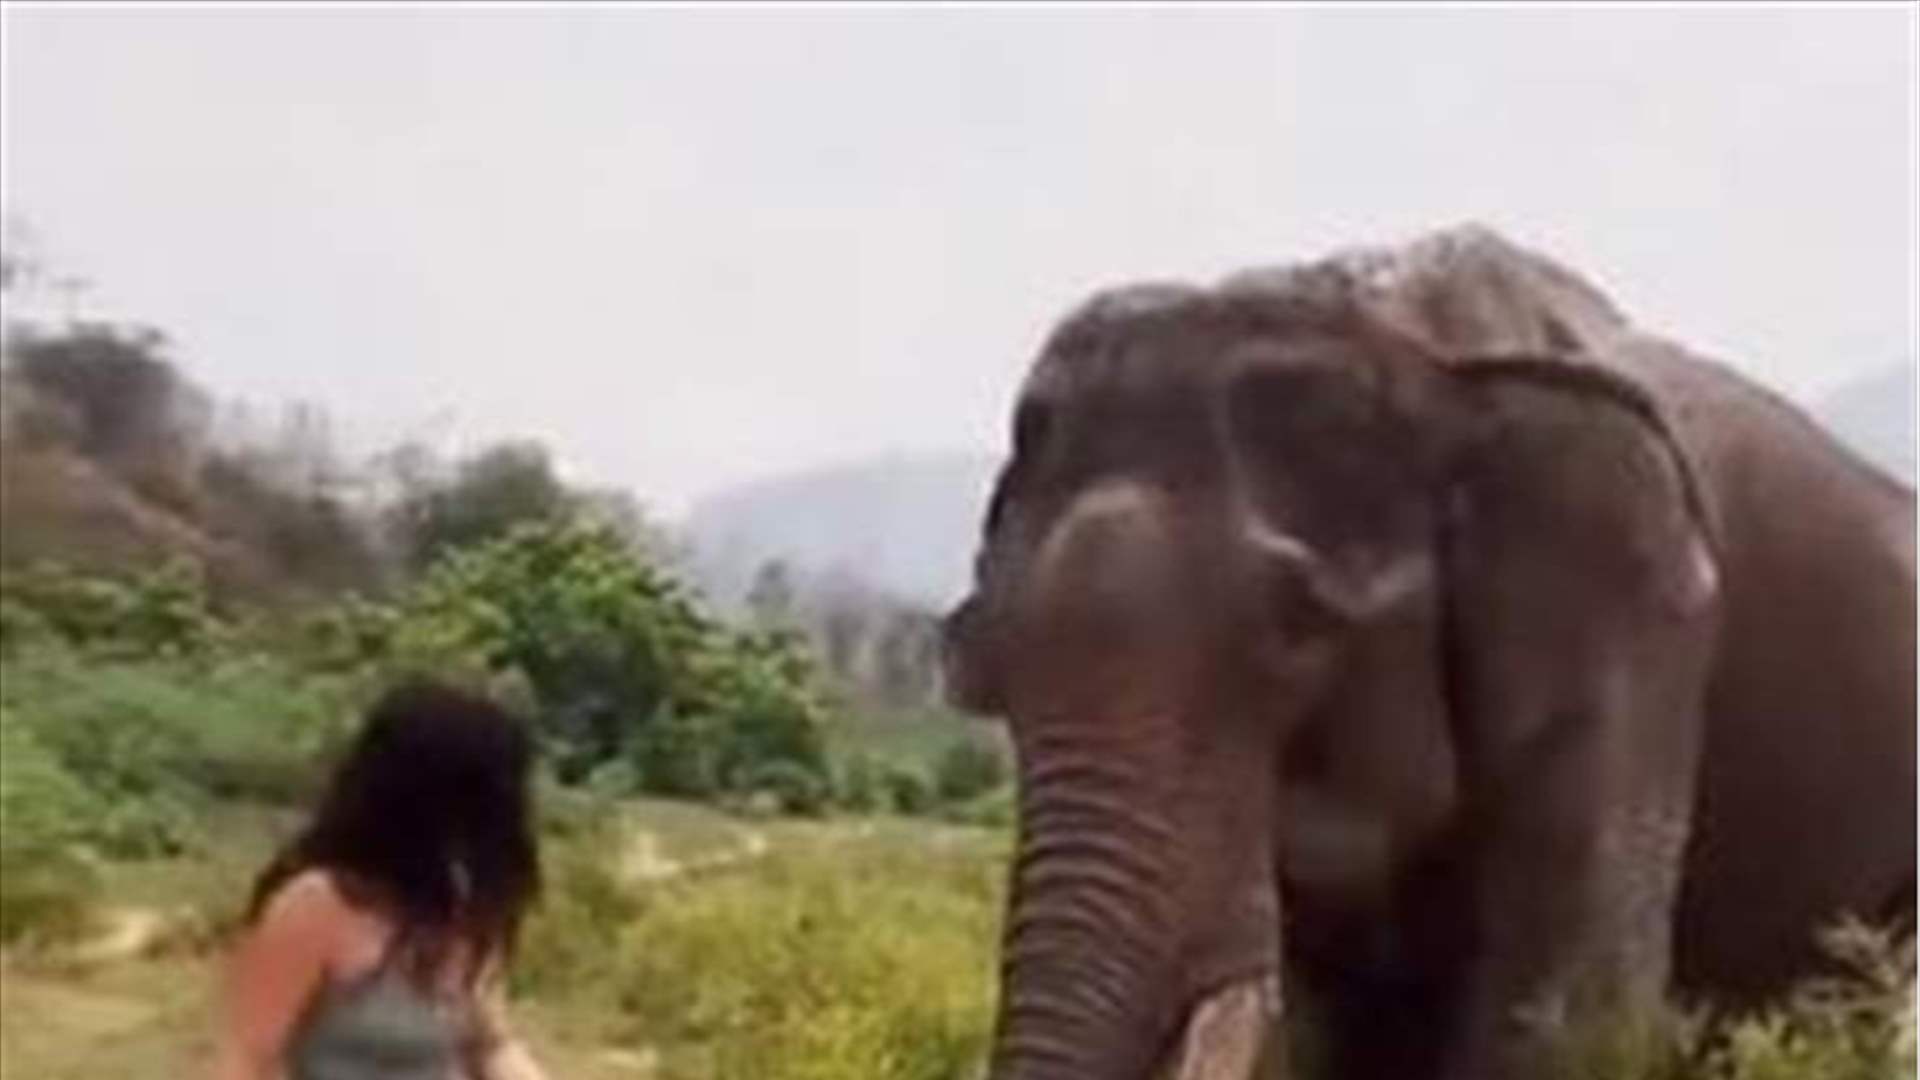 بالفيديو - كانت تمازح فيلاً ضخماً فتلقت ضربة قوية 